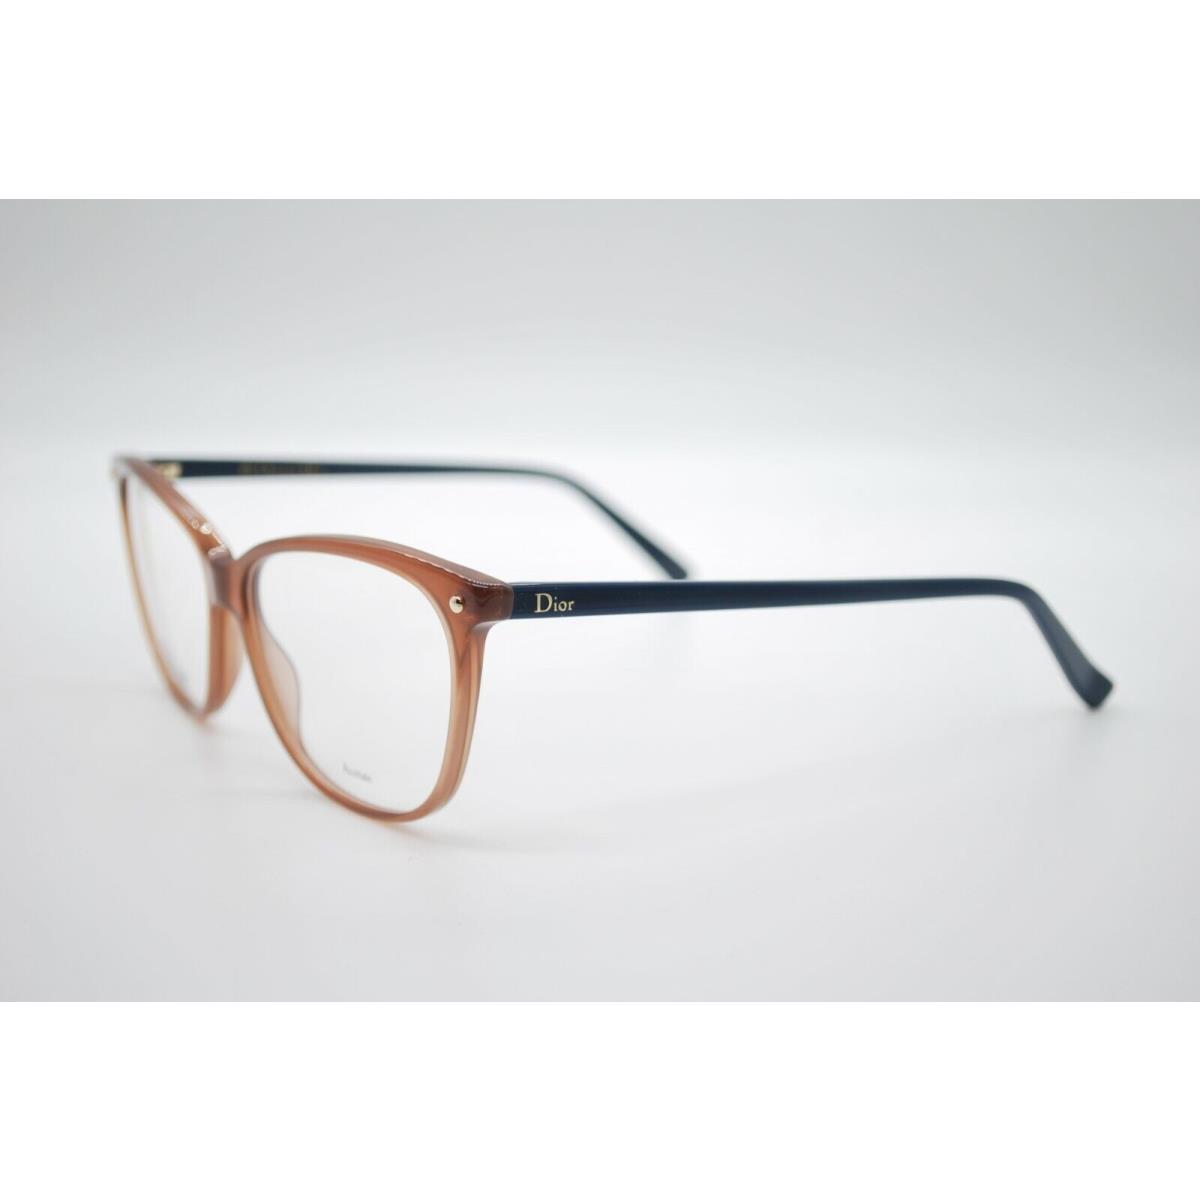 Dior eyeglasses  - BROWN BLUE Frame 0